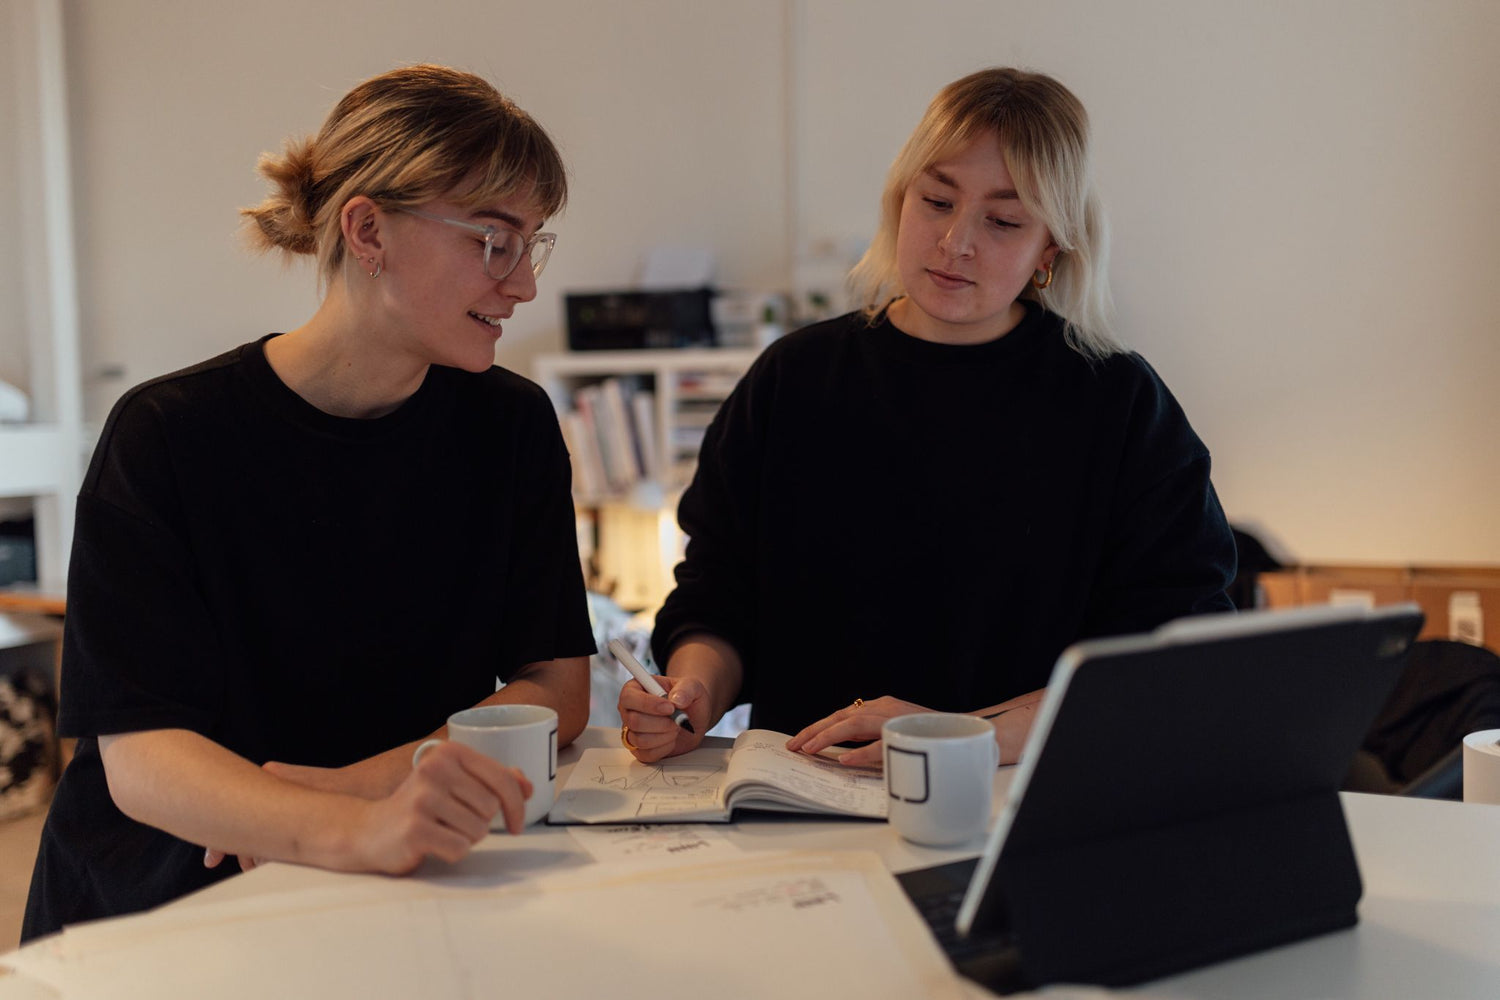 Designer-Duo Lex & Julez steht beim Designen ihrer nachhaltigen Mode mit einem iPad, 2 Kaffeetassen und einem Notizbuch an einem Tisch